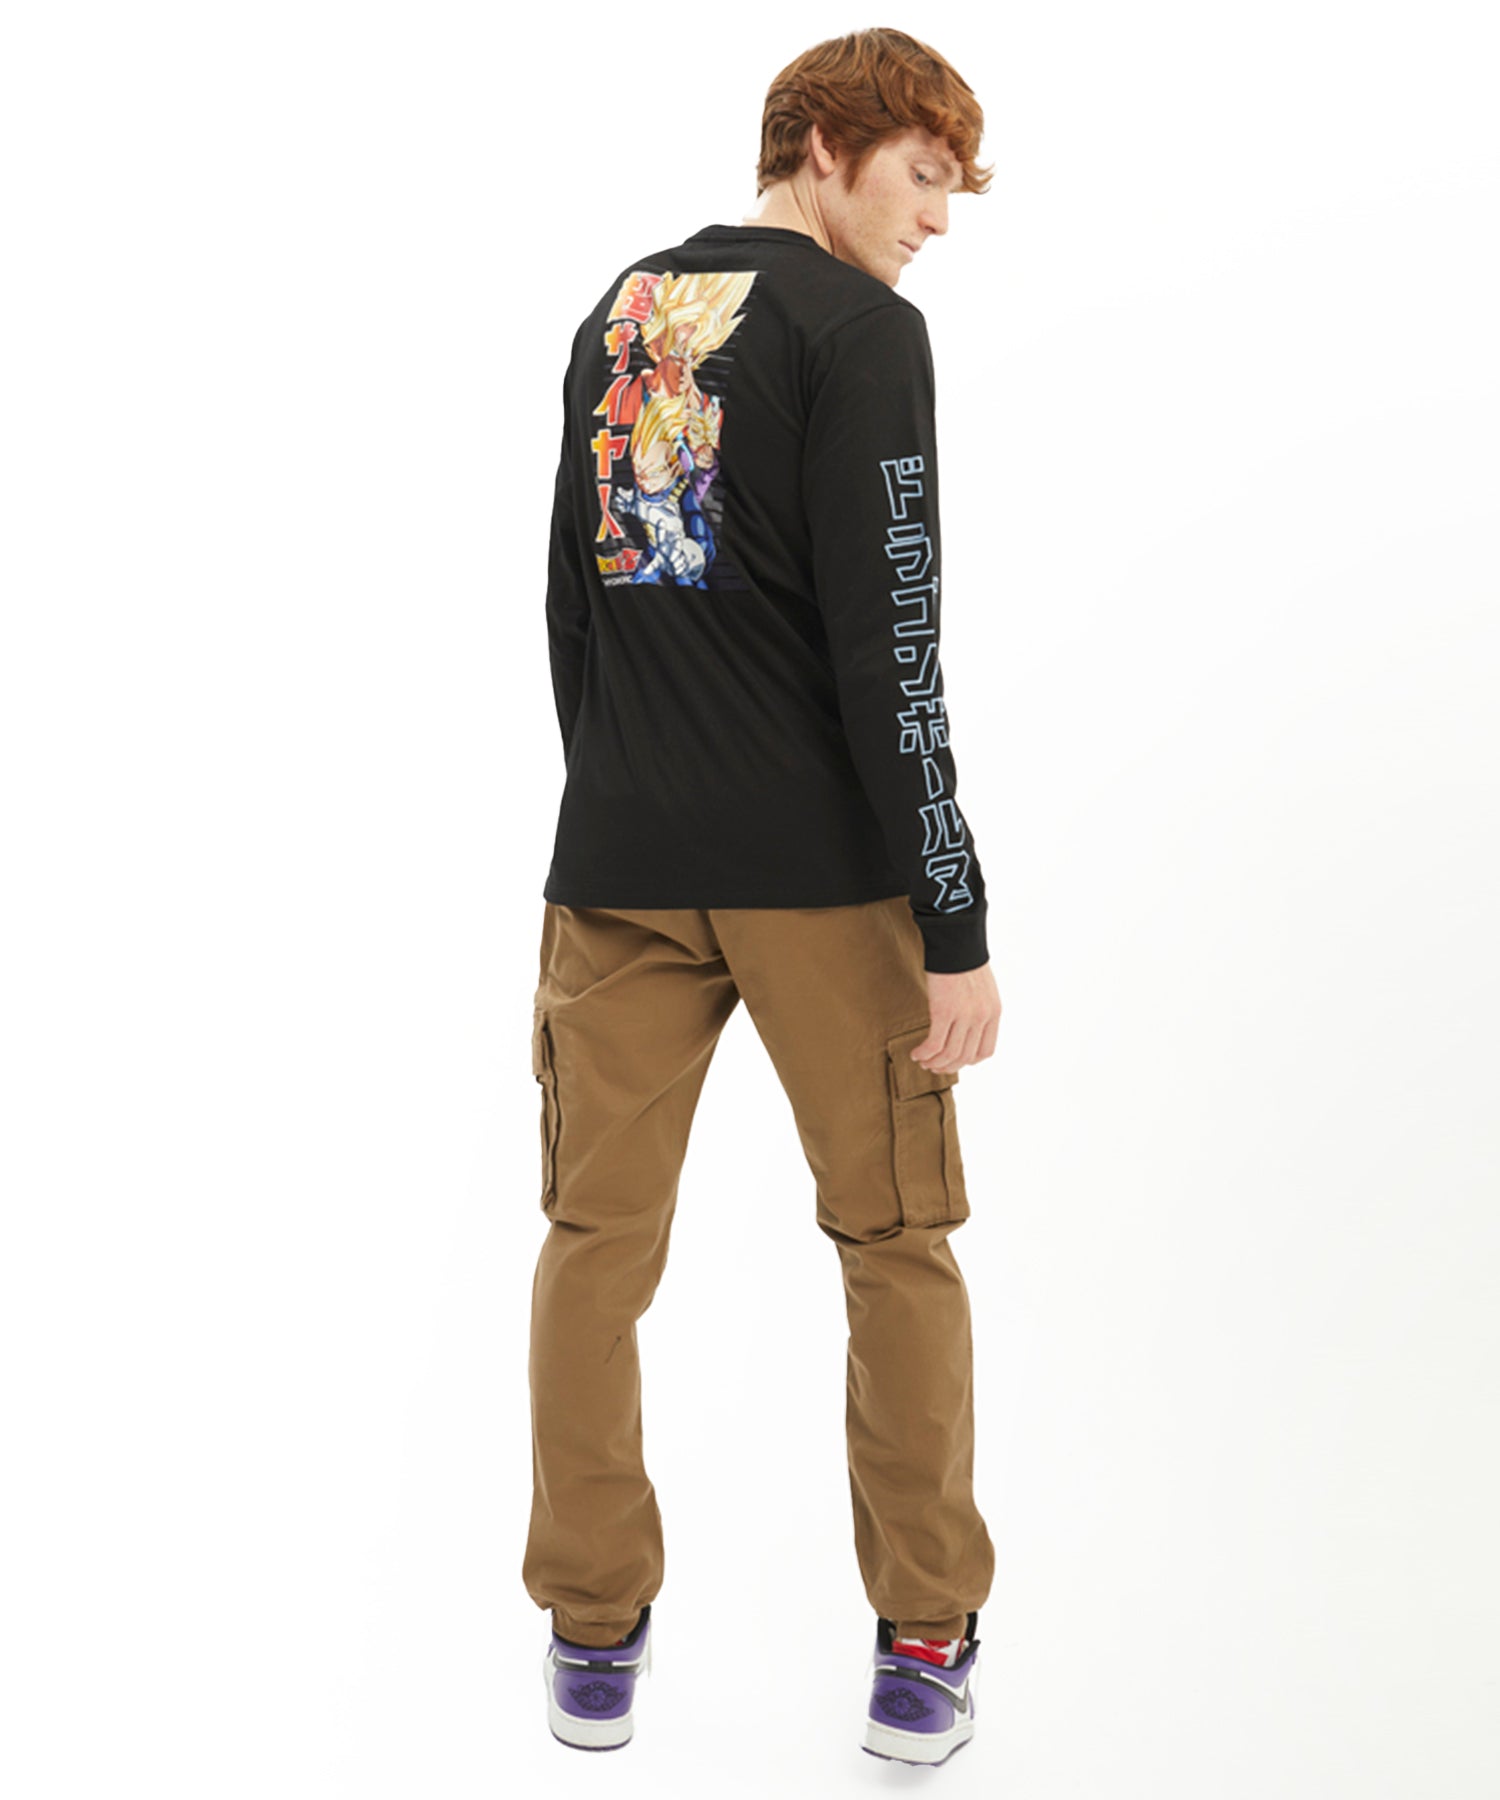 hydroponic-camiseta-de-manga-larga-dragon-ball-z-saiyan-3-color-negro-algodón-100%-logo-pequeño-en-el-bolsillo-y-estampado-en-la-espalda-y-mangas